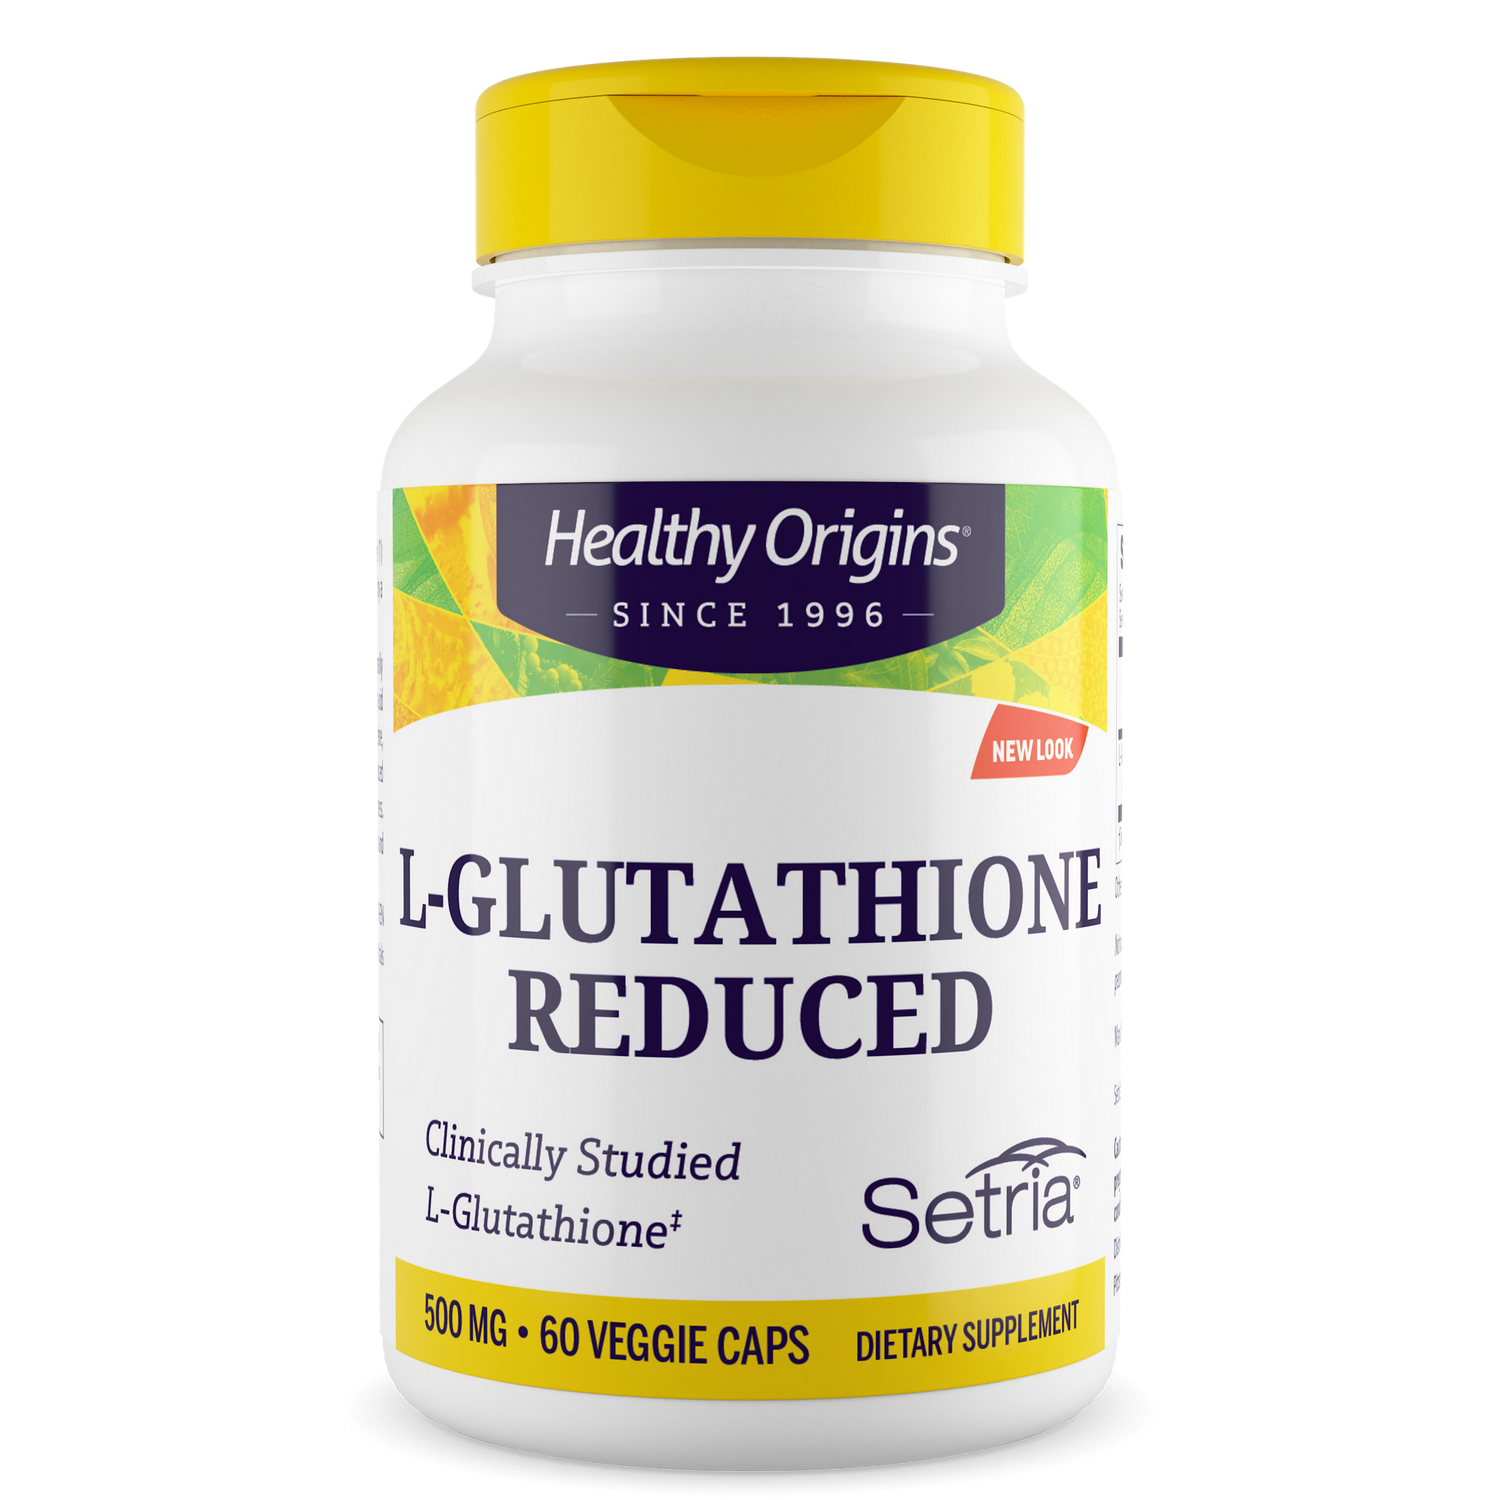 L-Glutathione 500mg (Setria®) "reduced"